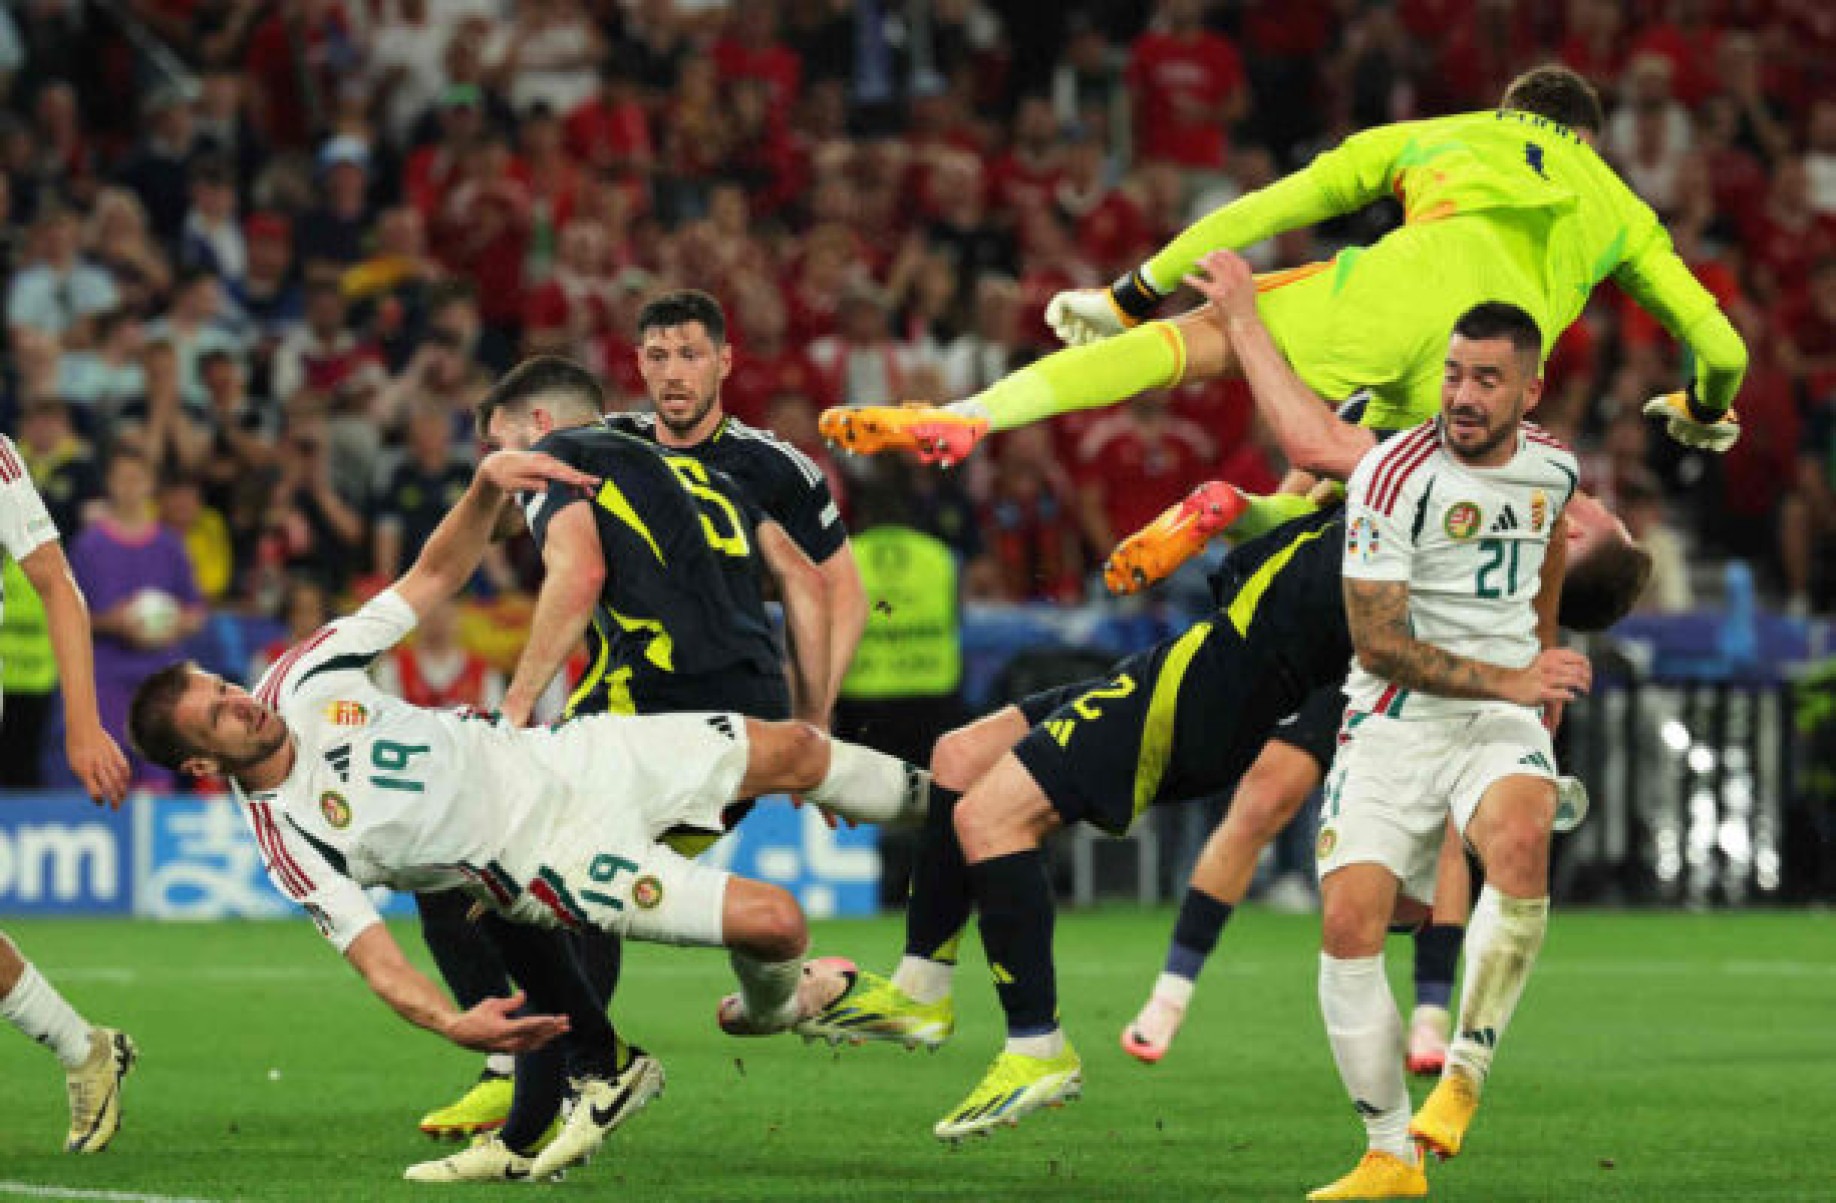 Hungria vence Escócia no fim e sonha com vaga na Eurocopa